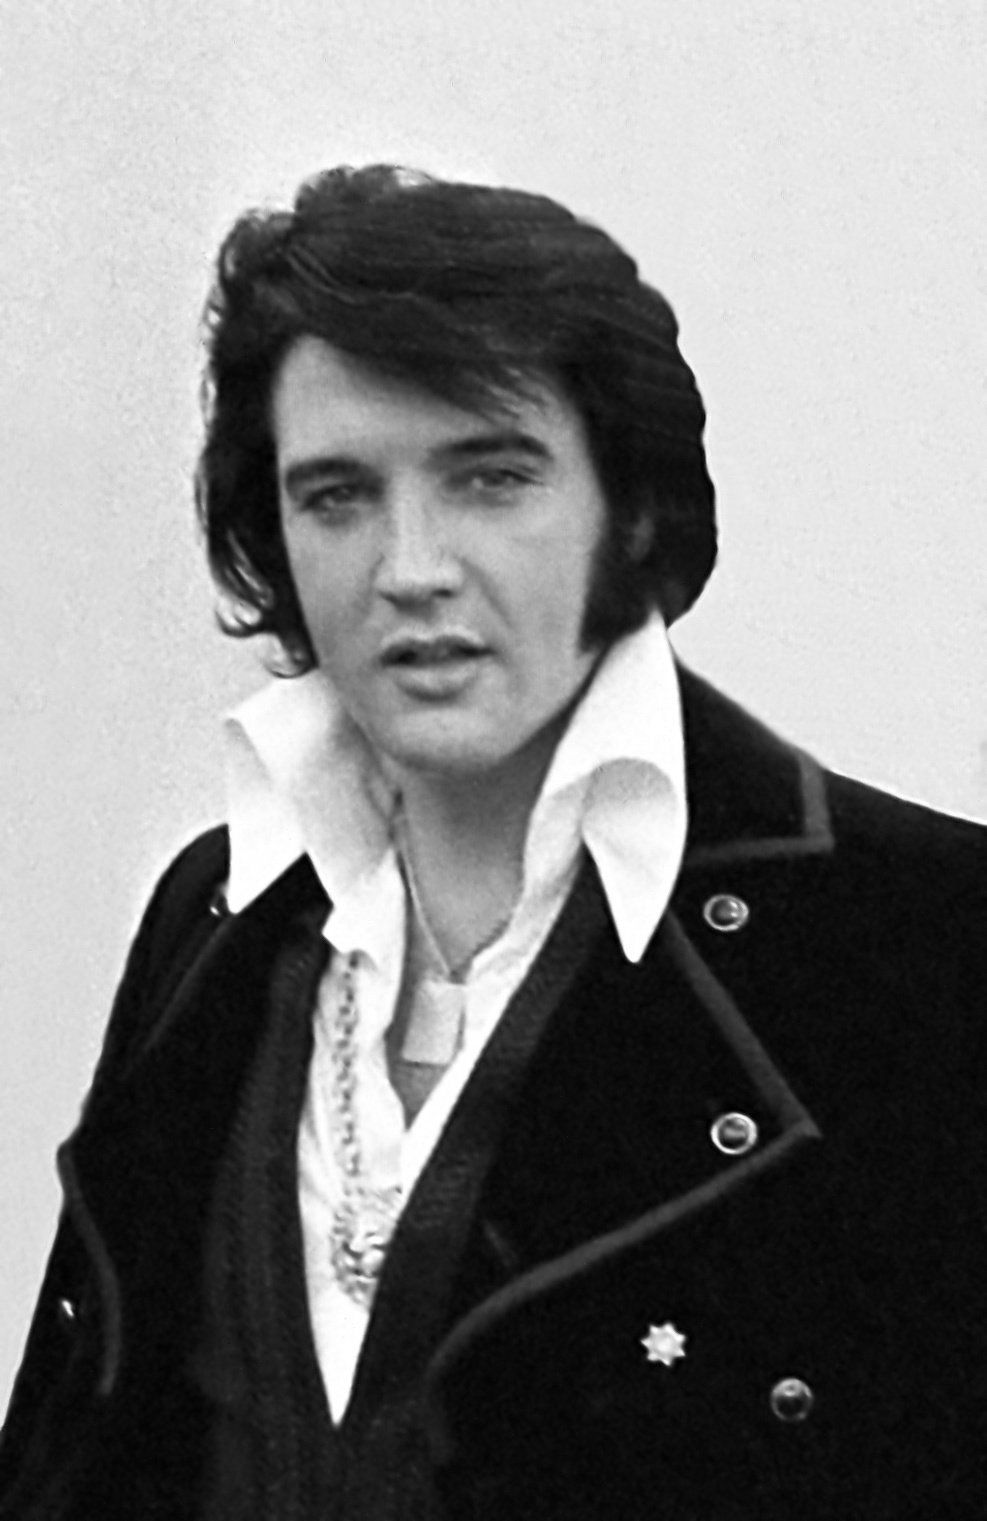 Video af Elvis, der synger 'Always on My Mind' kombineret med sjældne Presley-familieoptagelser